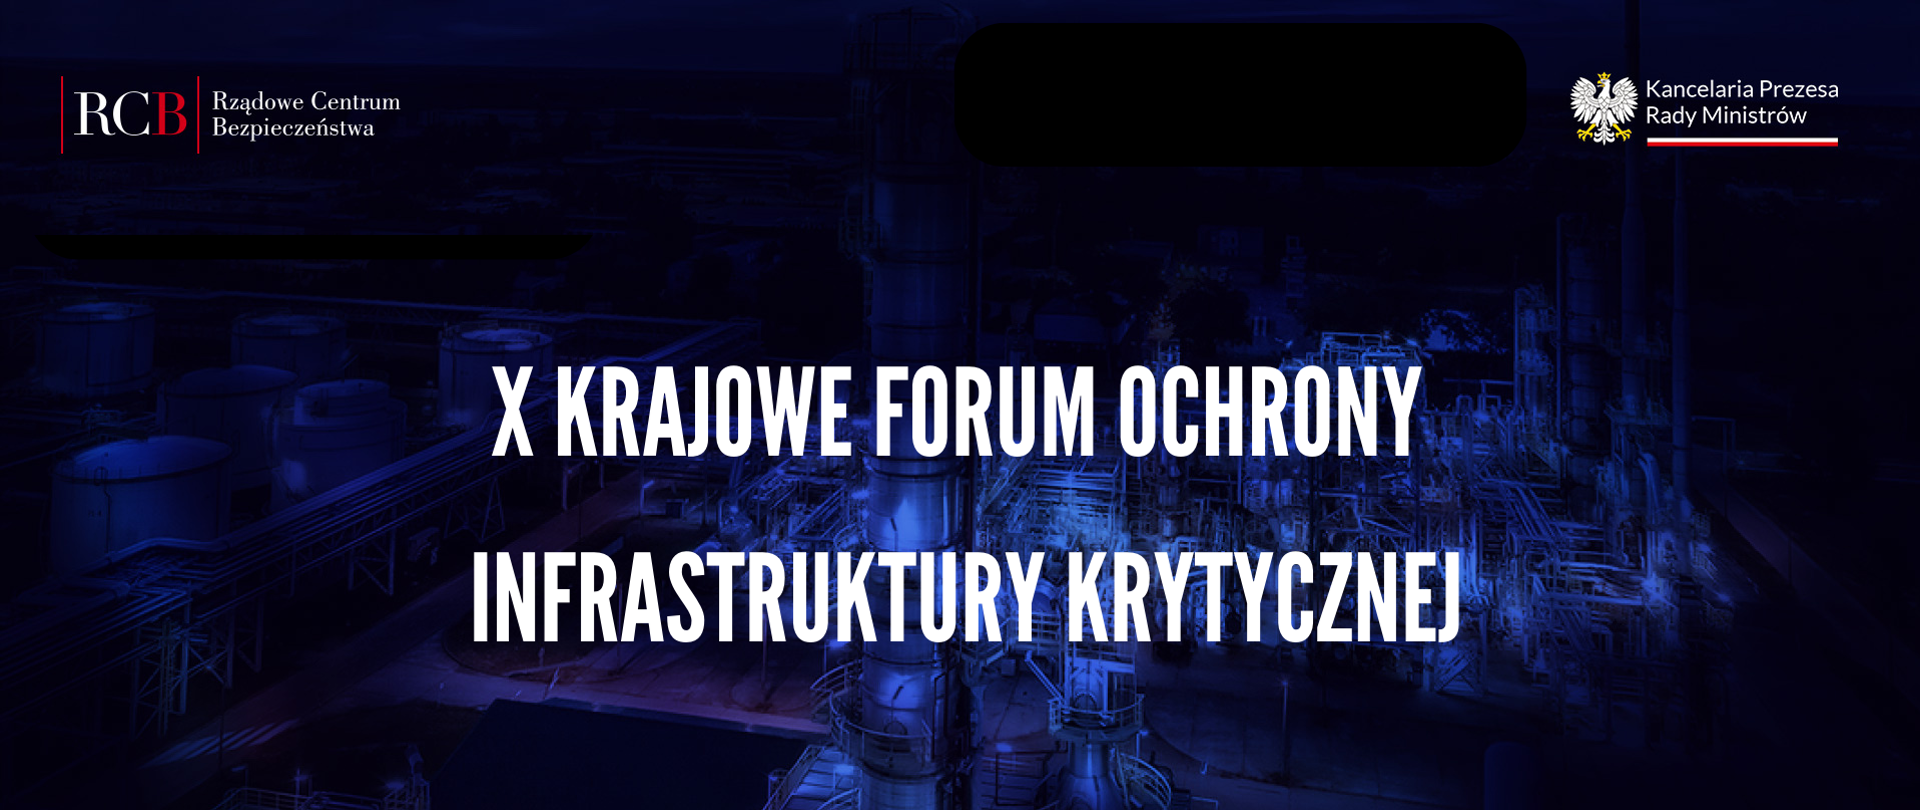 forum IK – X krajowe Forum Ochrony Infrastruktury Krytycznej